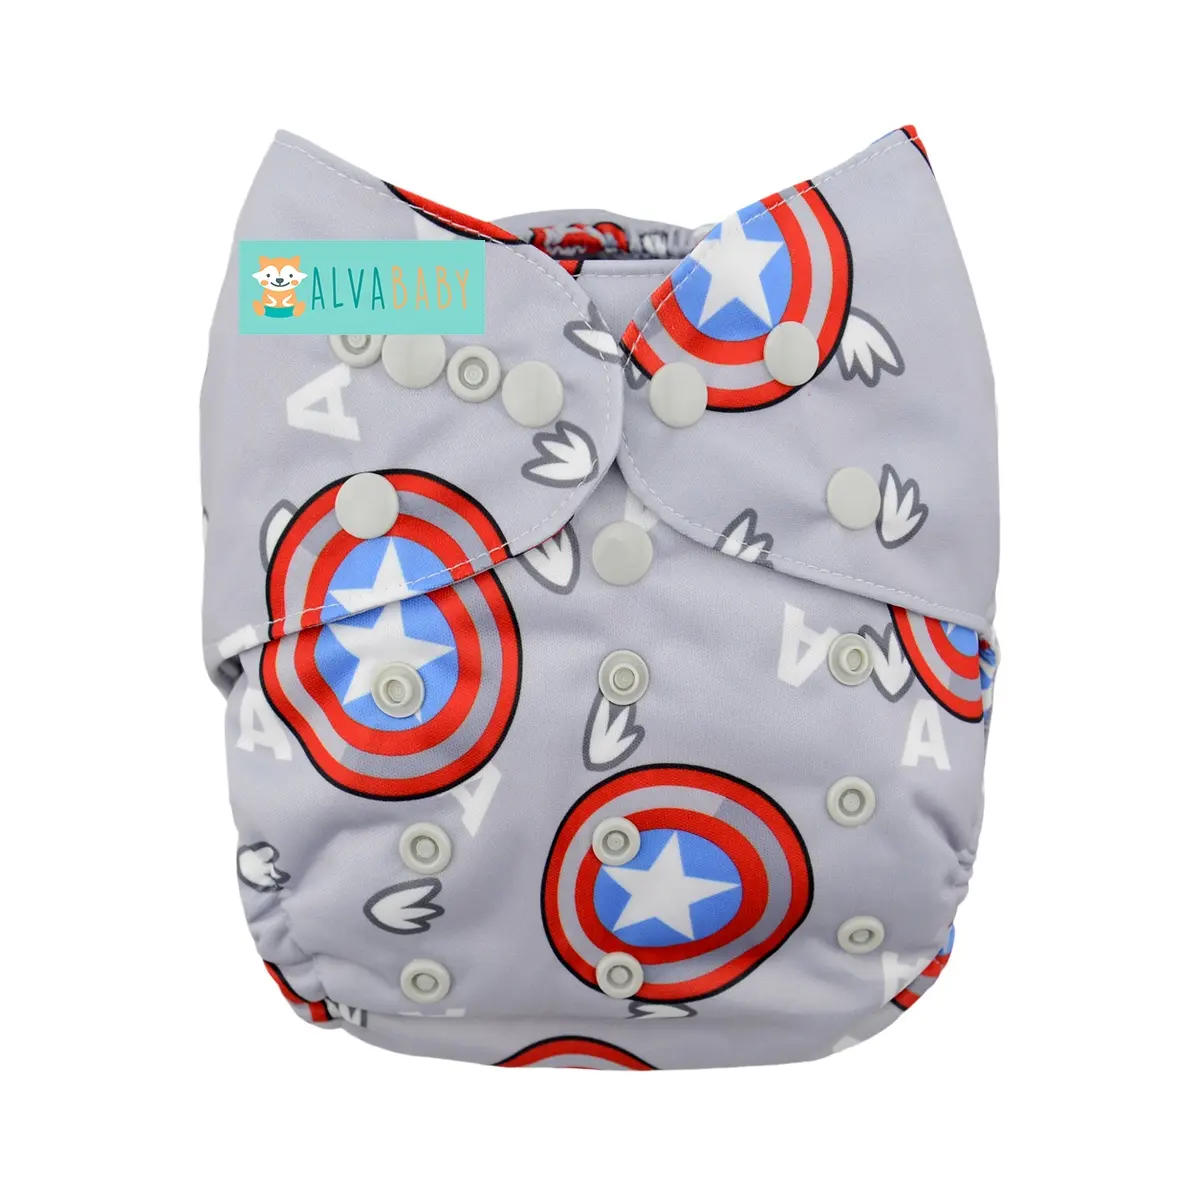 Alvababy capa de fralda de bebê, impresso, popular, reutilizável